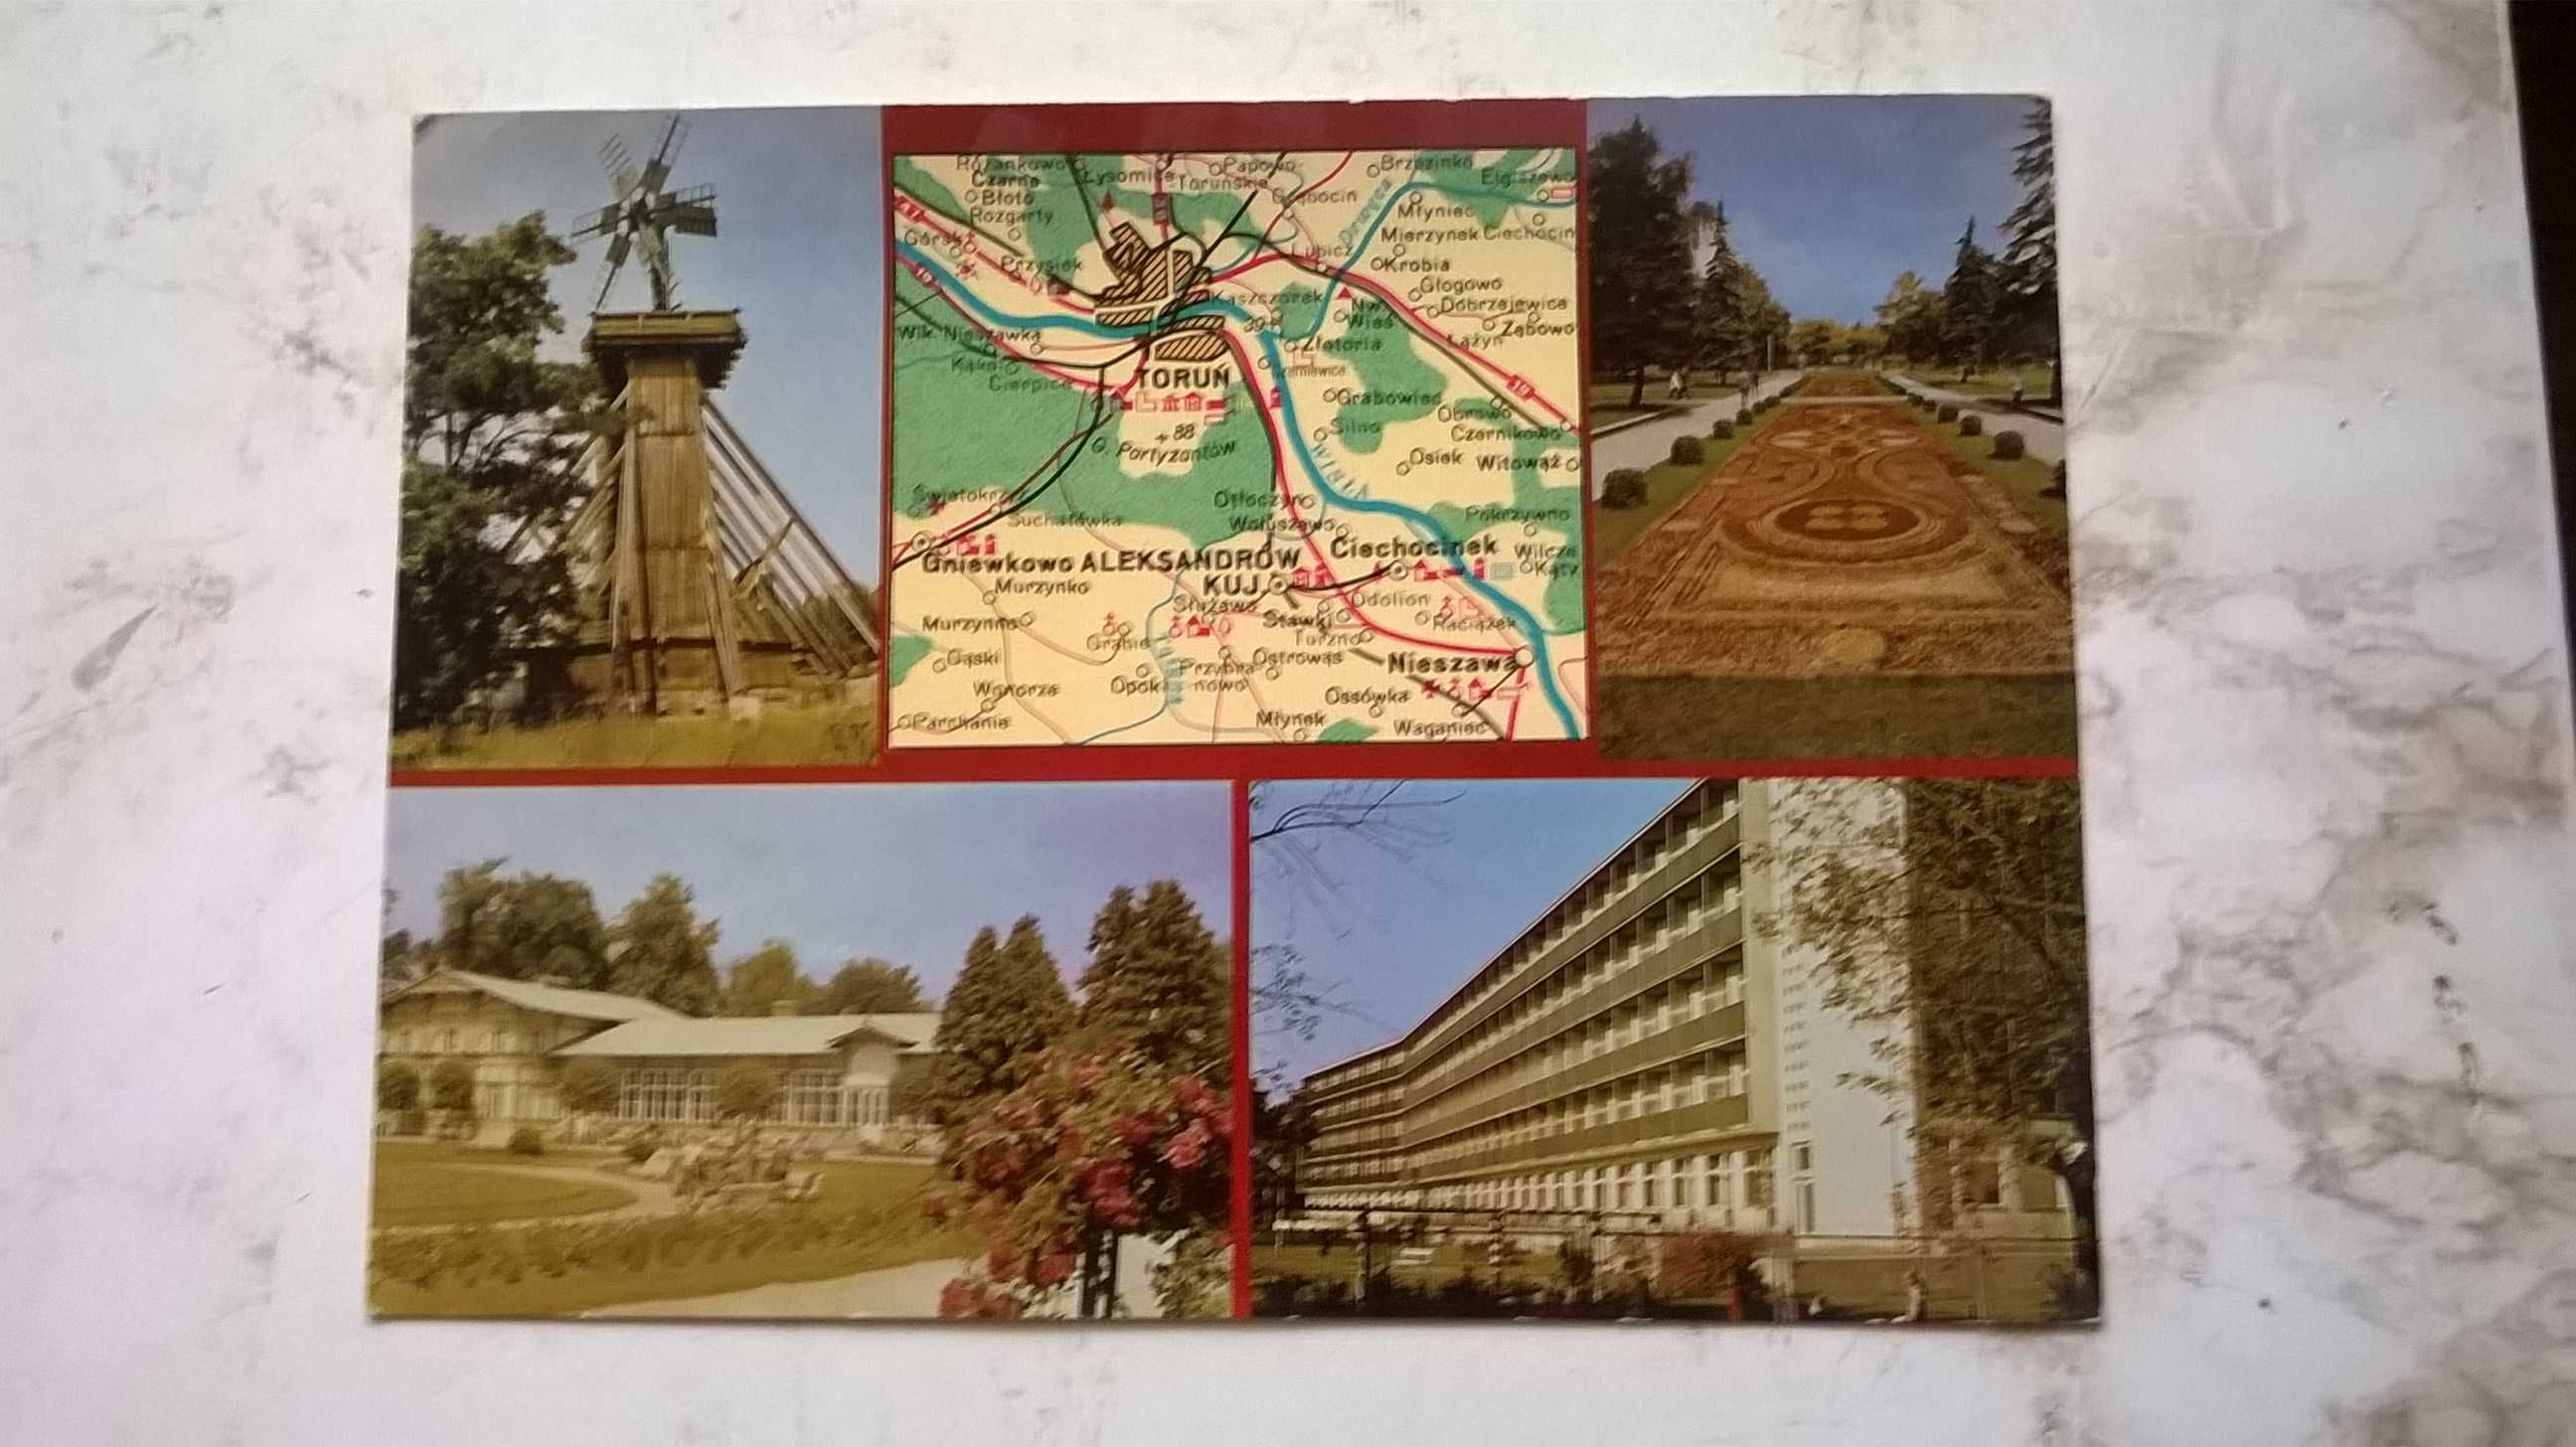 widokówki (pocztówki) - mozaiki z mapką geograficzną - 32 szt.